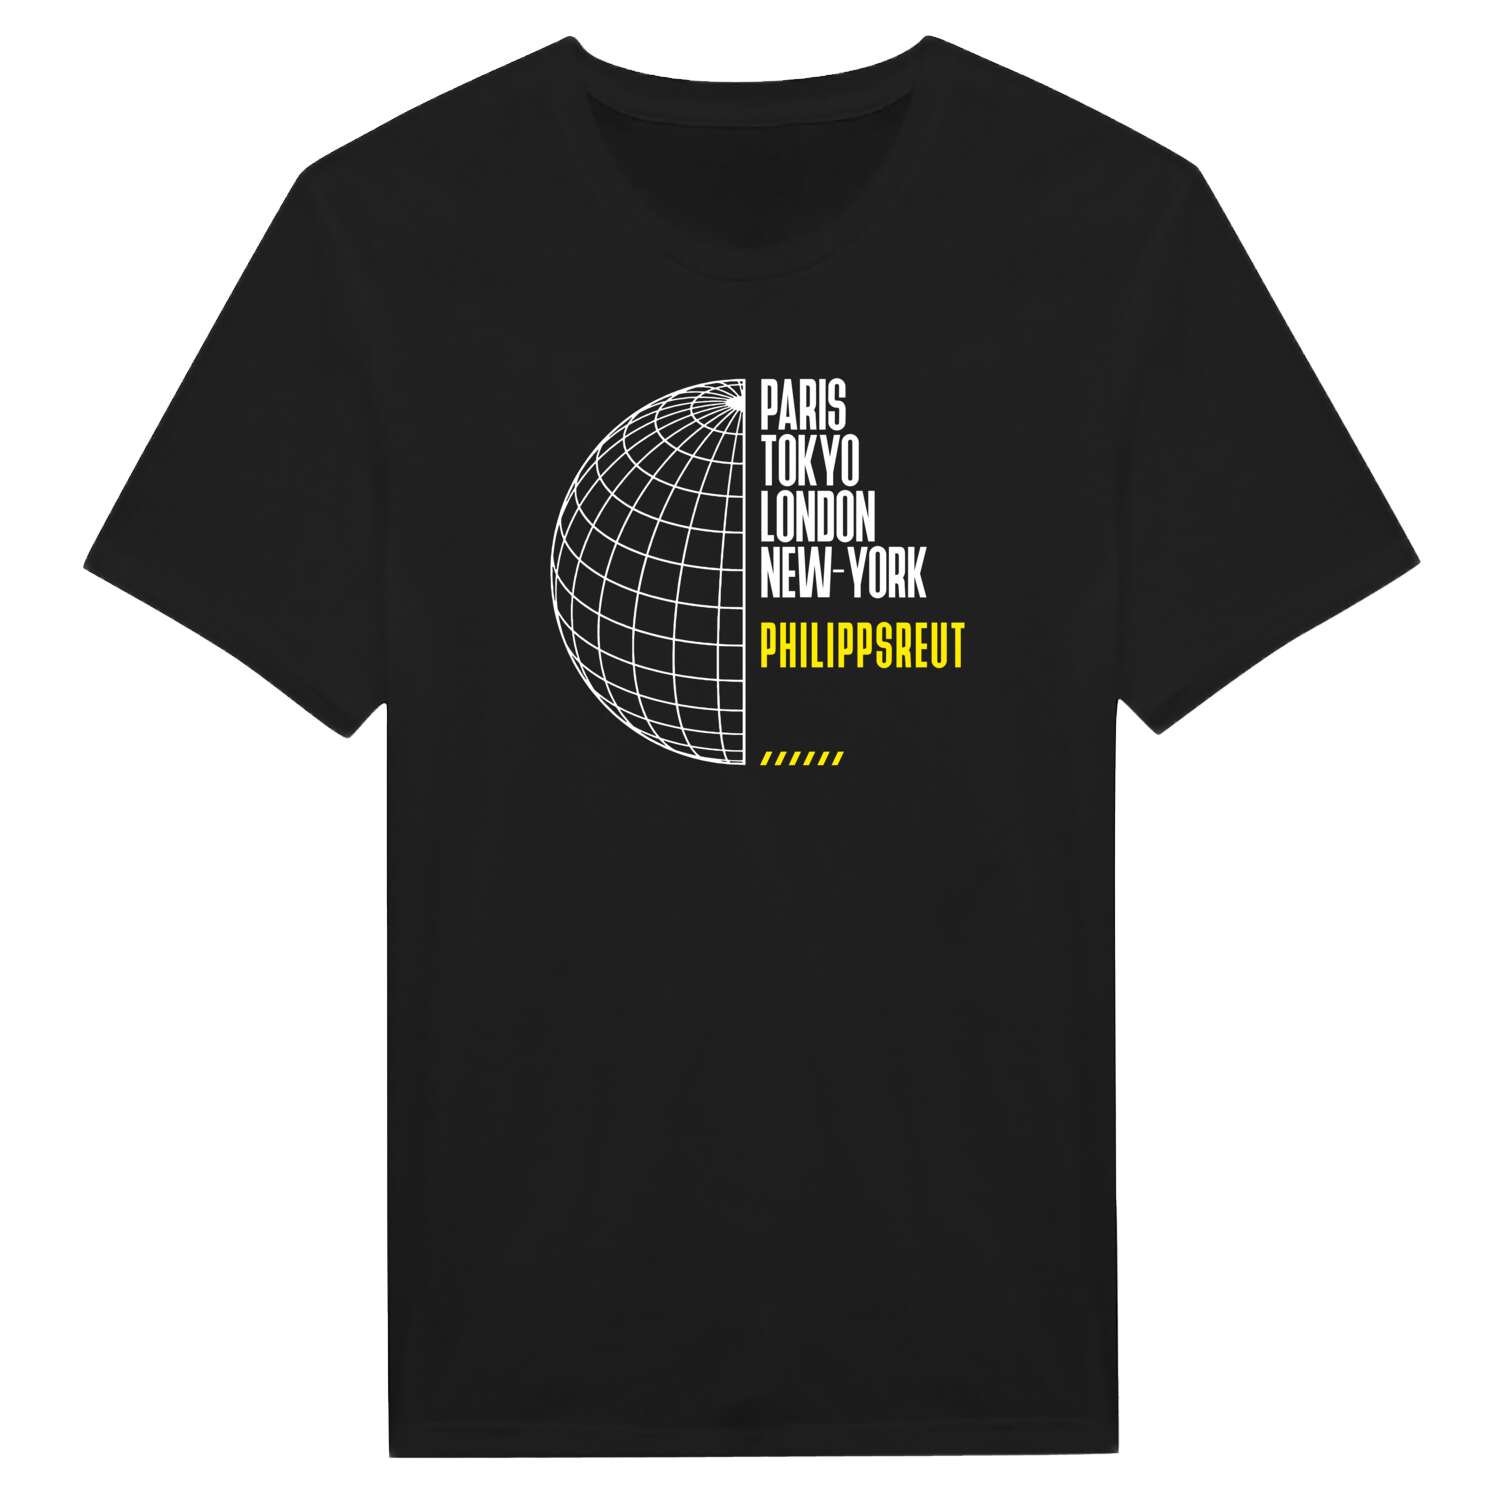 Philippsreut T-Shirt »Paris Tokyo London«